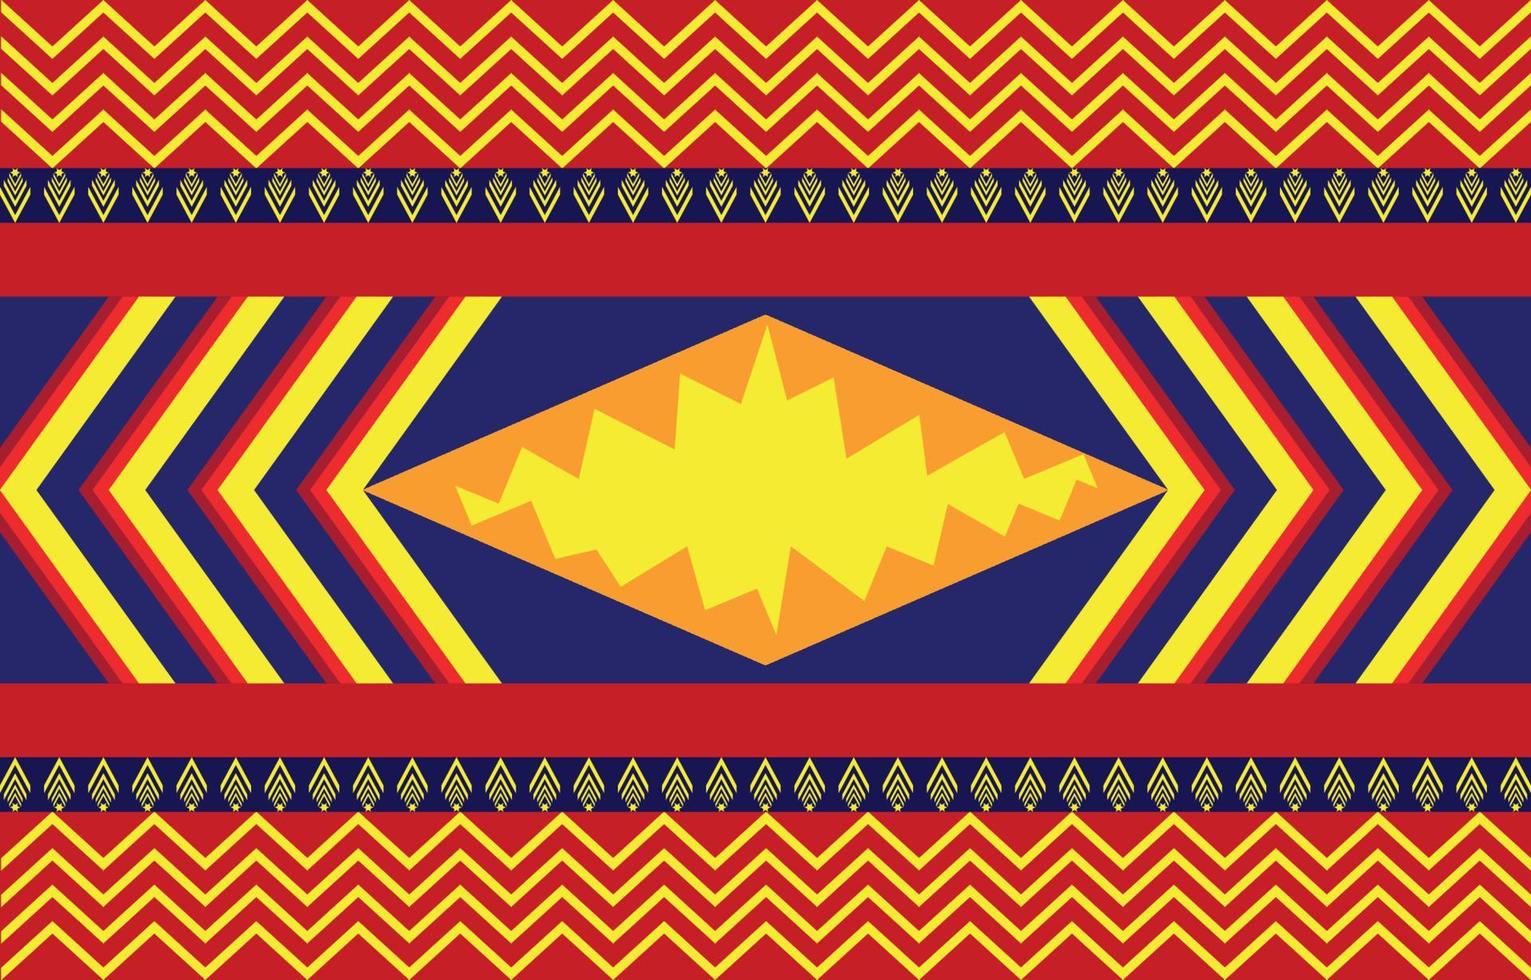 colorido diseño abstracto geométrico étnico africano o americano para fondo o papel tapiz. Ilustración de vector de patrón de tela